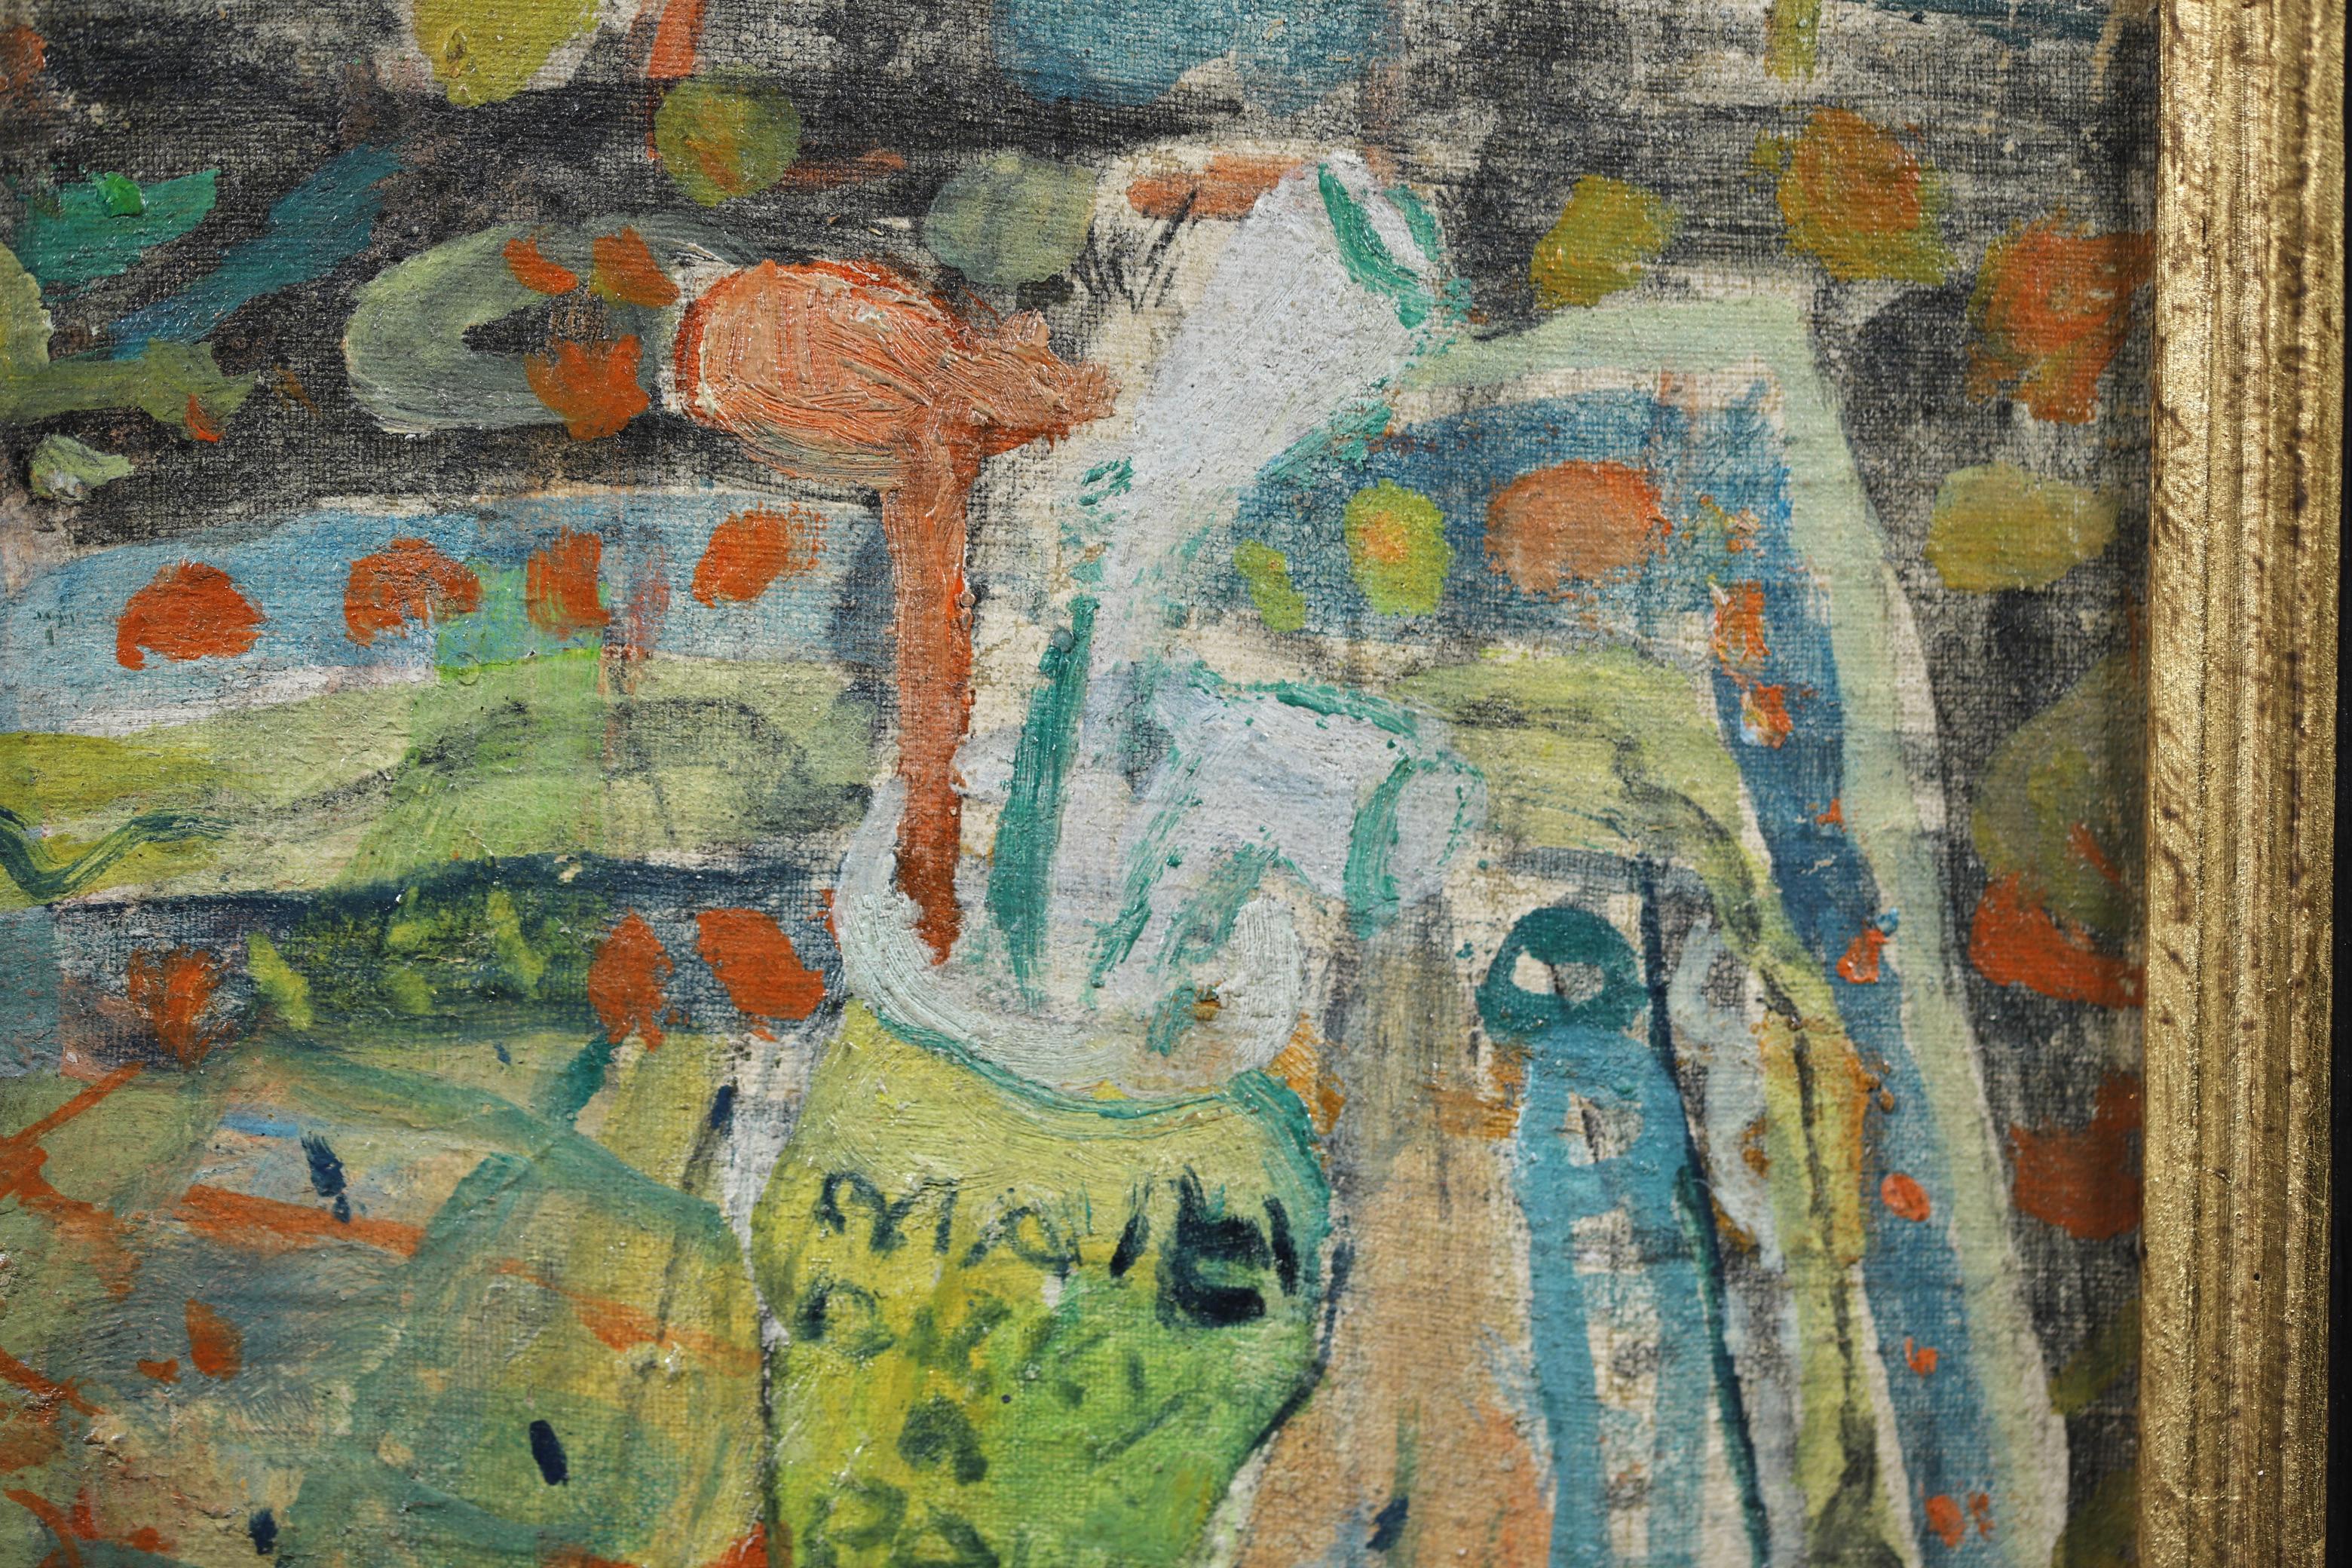 Ein wunderschönes Stillleben in Öl auf Leinwand des französischen Malers Jean Albert Pougny, das eine Pfeife in einem Topf auf einem gemusterten Tuch zeigt. Signiert unten rechts. Gerahmte Abmessungen sind 10 Zoll hoch und 9,5 Zoll